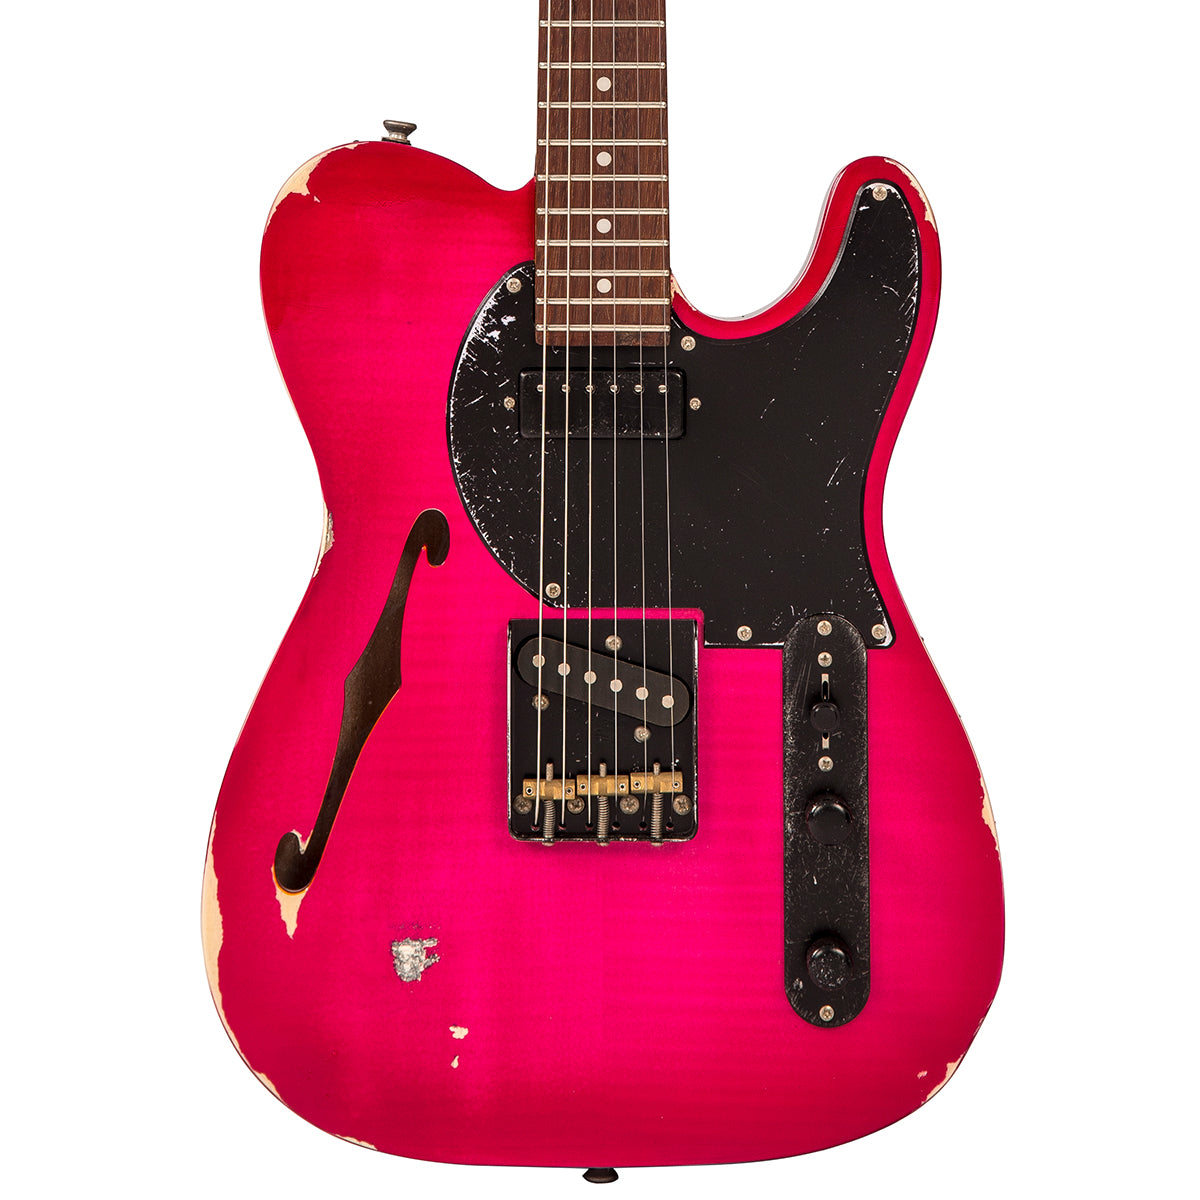 SOLD - Vintage V72 ProShop Unique ~ Flamed Pink Relic, Electrics for sale at Richards Guitars.